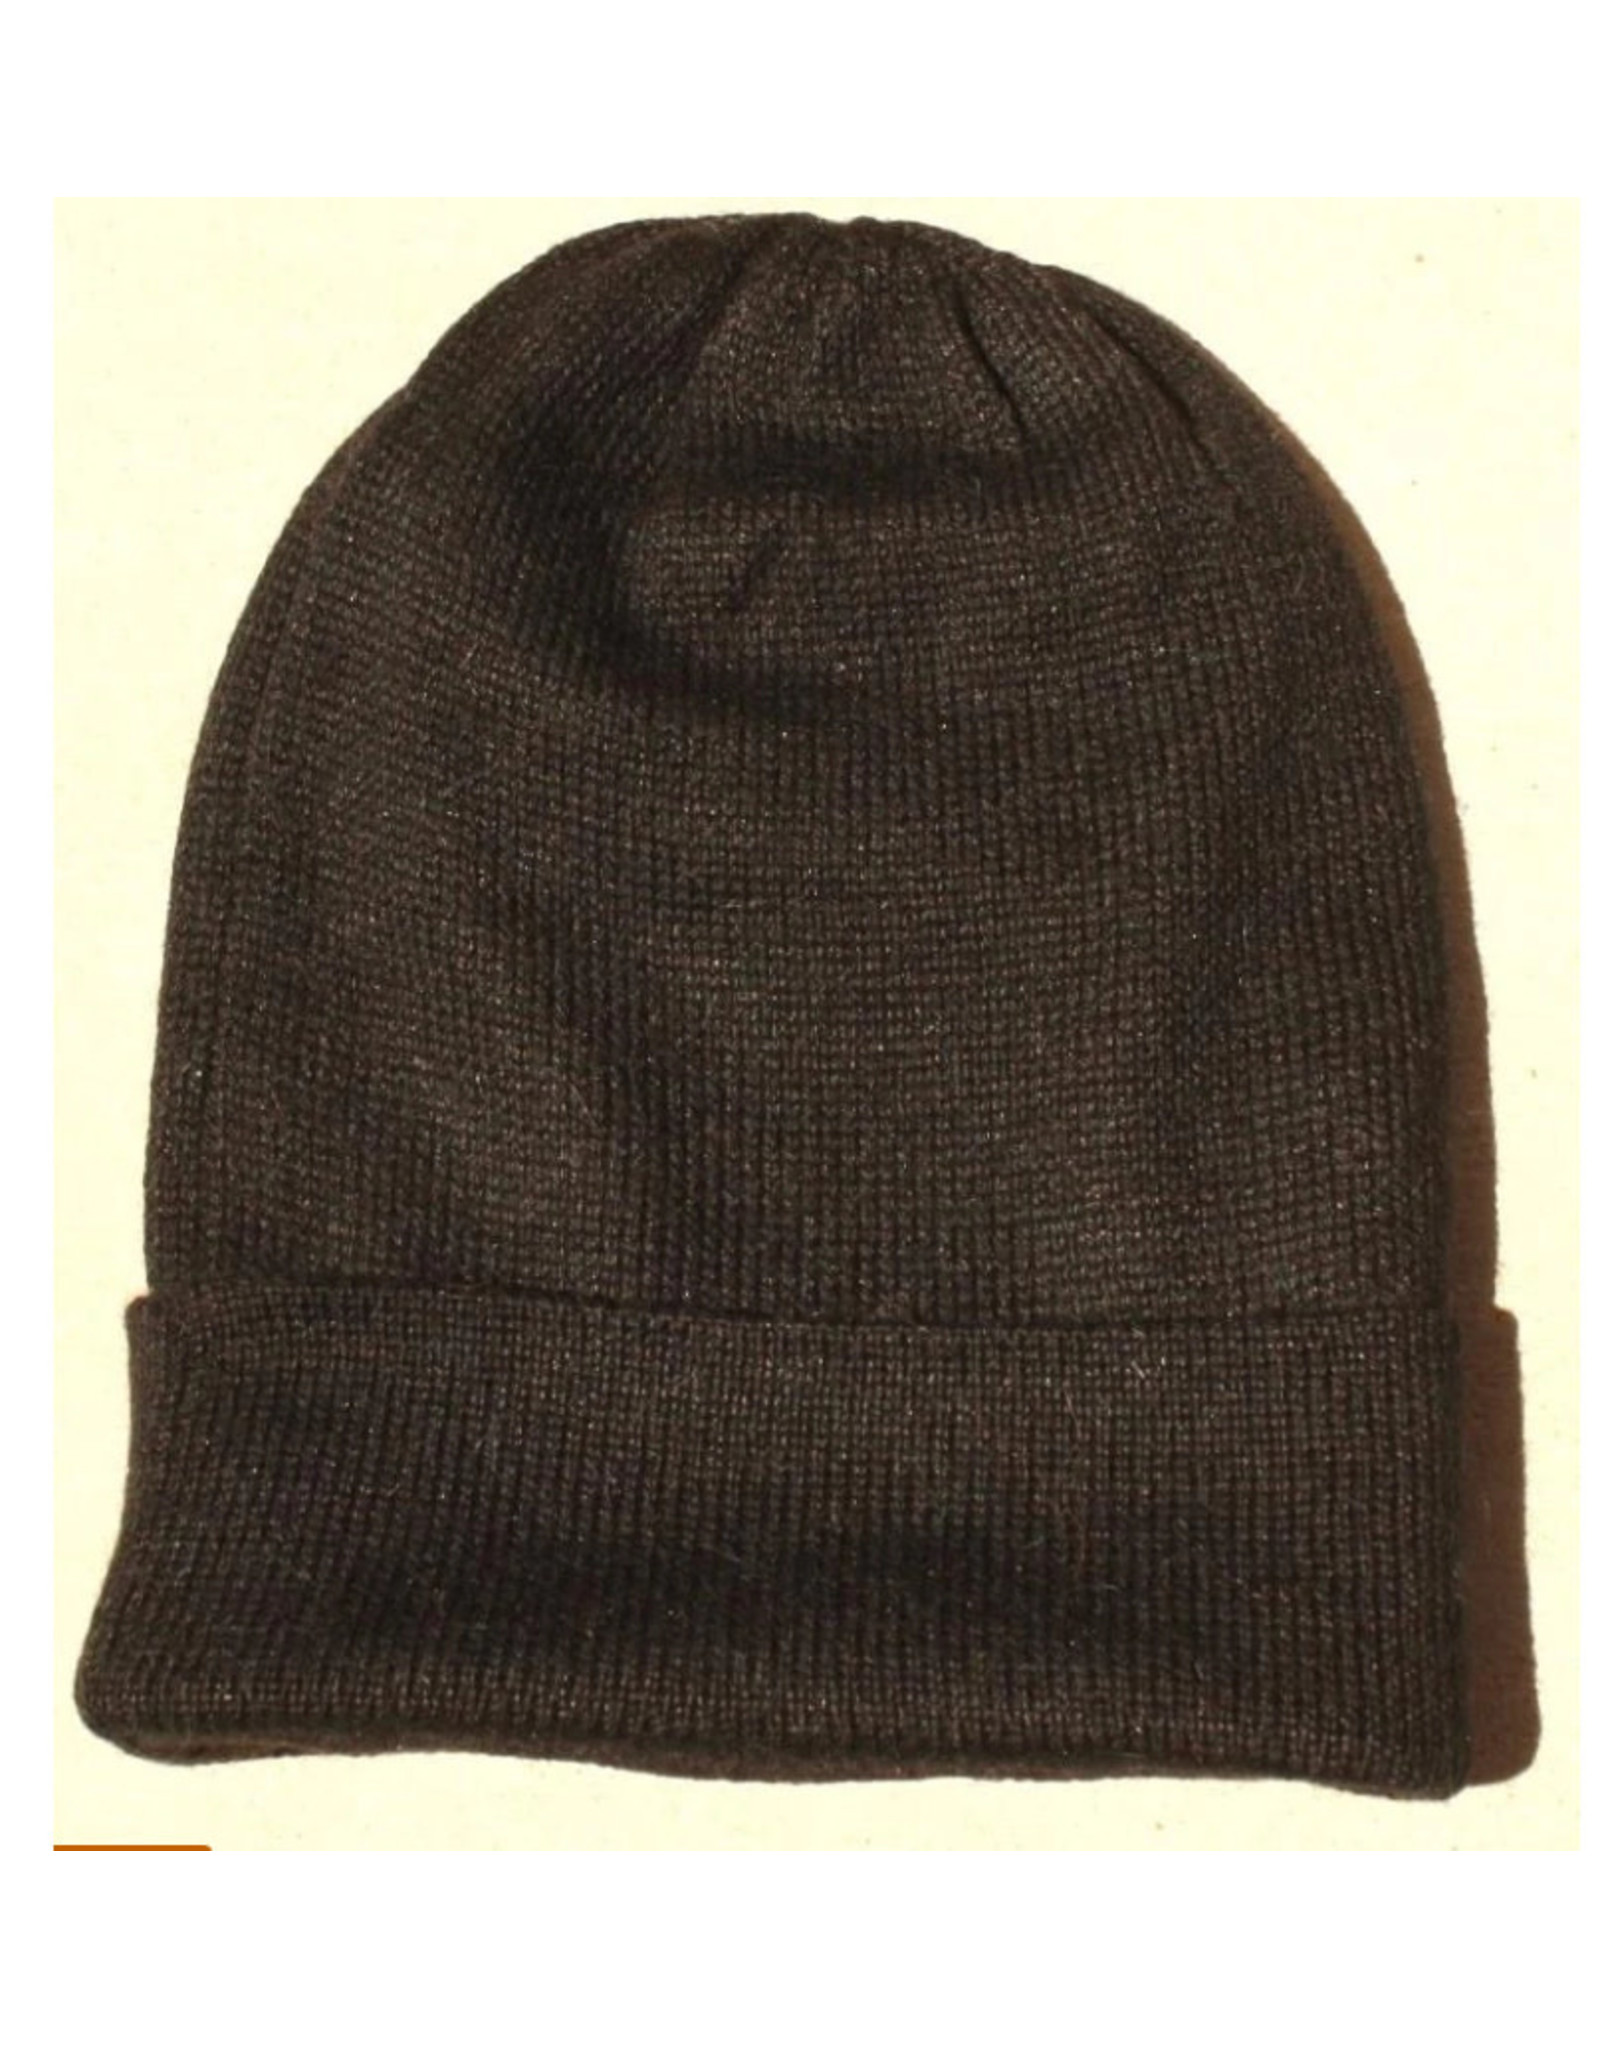 Black Iditarod 100% Alpaca Beanie Hat